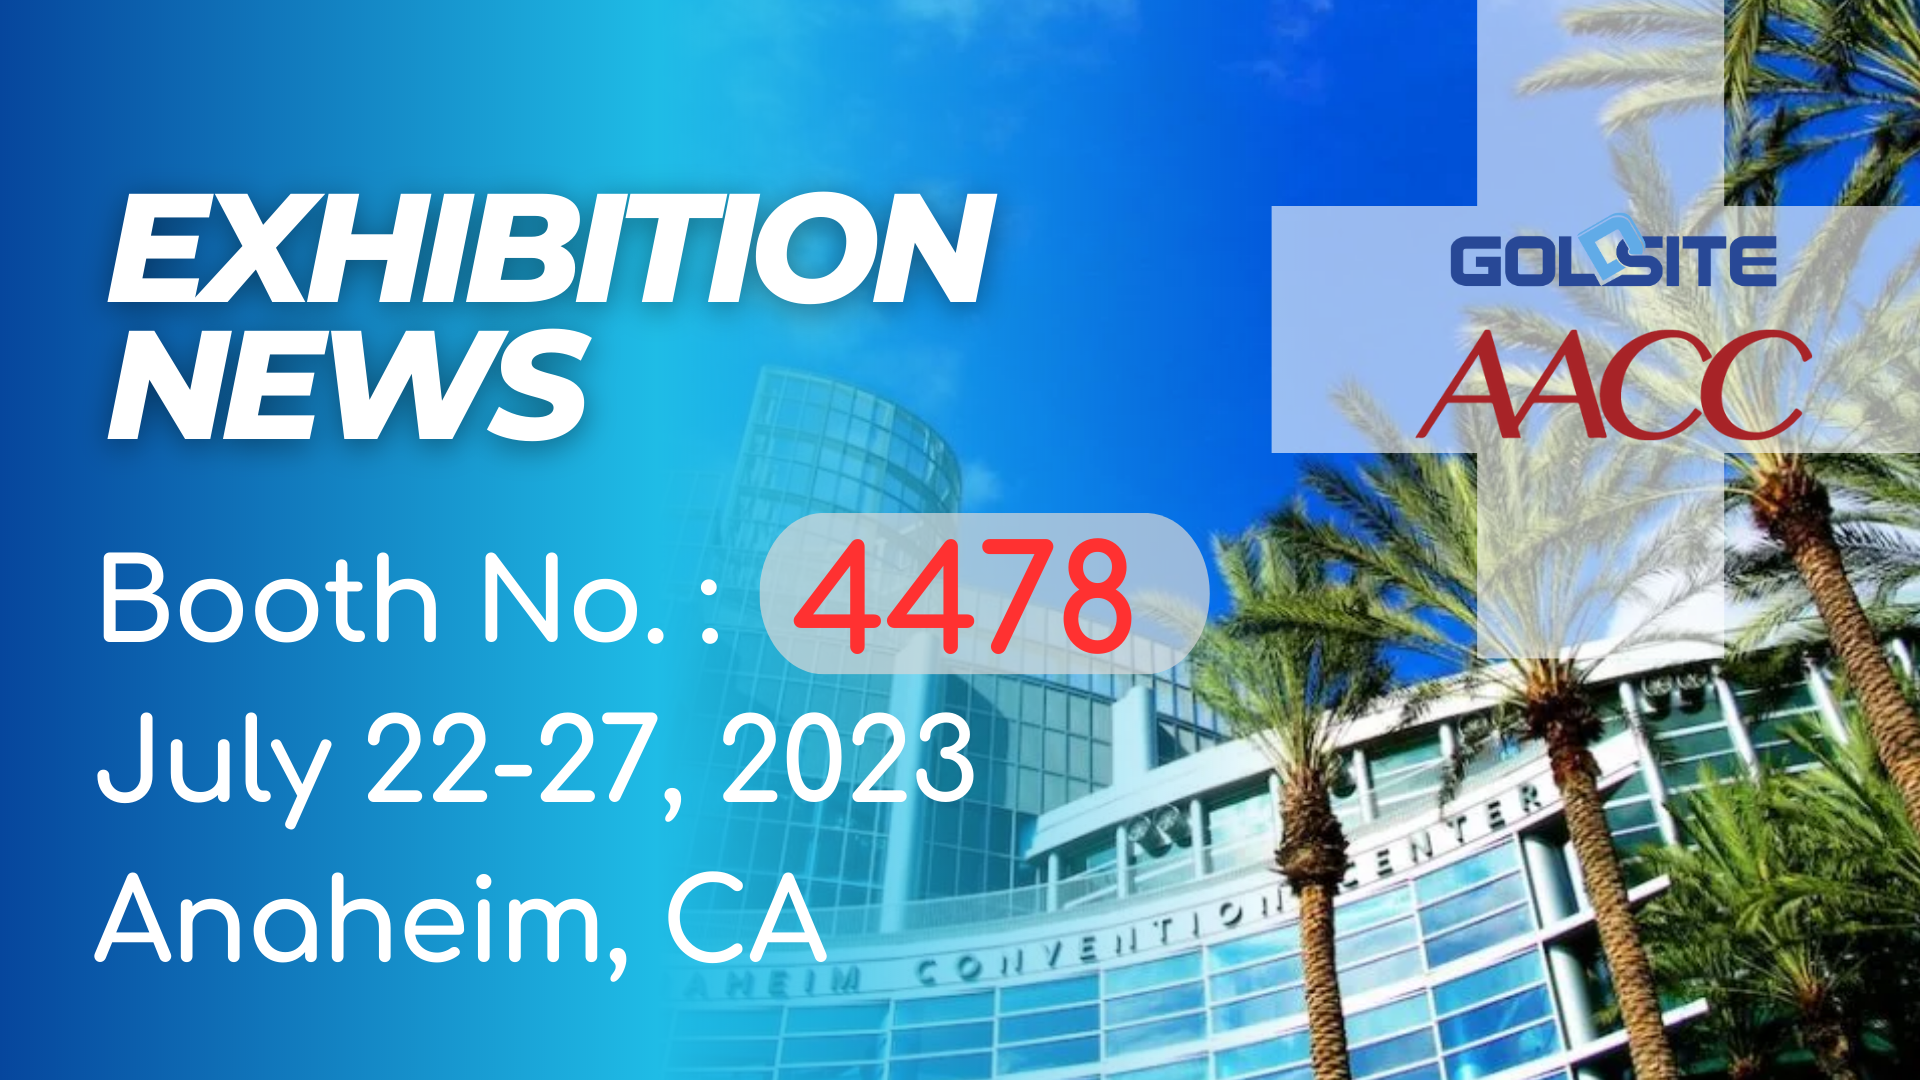 Próximos eventos: Goldsite para exhibir en AACC 2023 en CA!